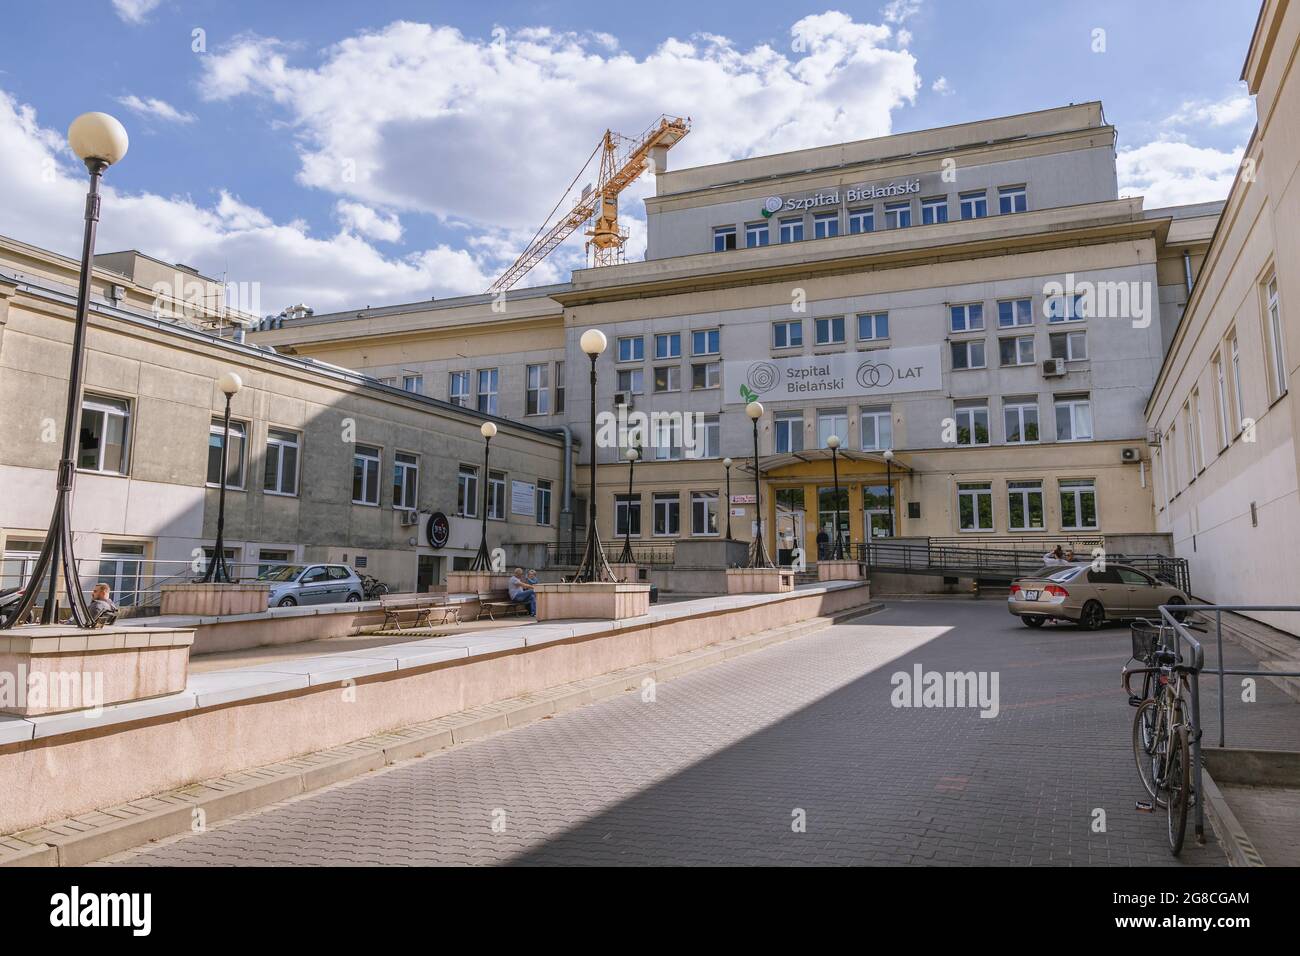 Bielanski Hospital in Bielany district of Warsaw city, Poland Stock Photo